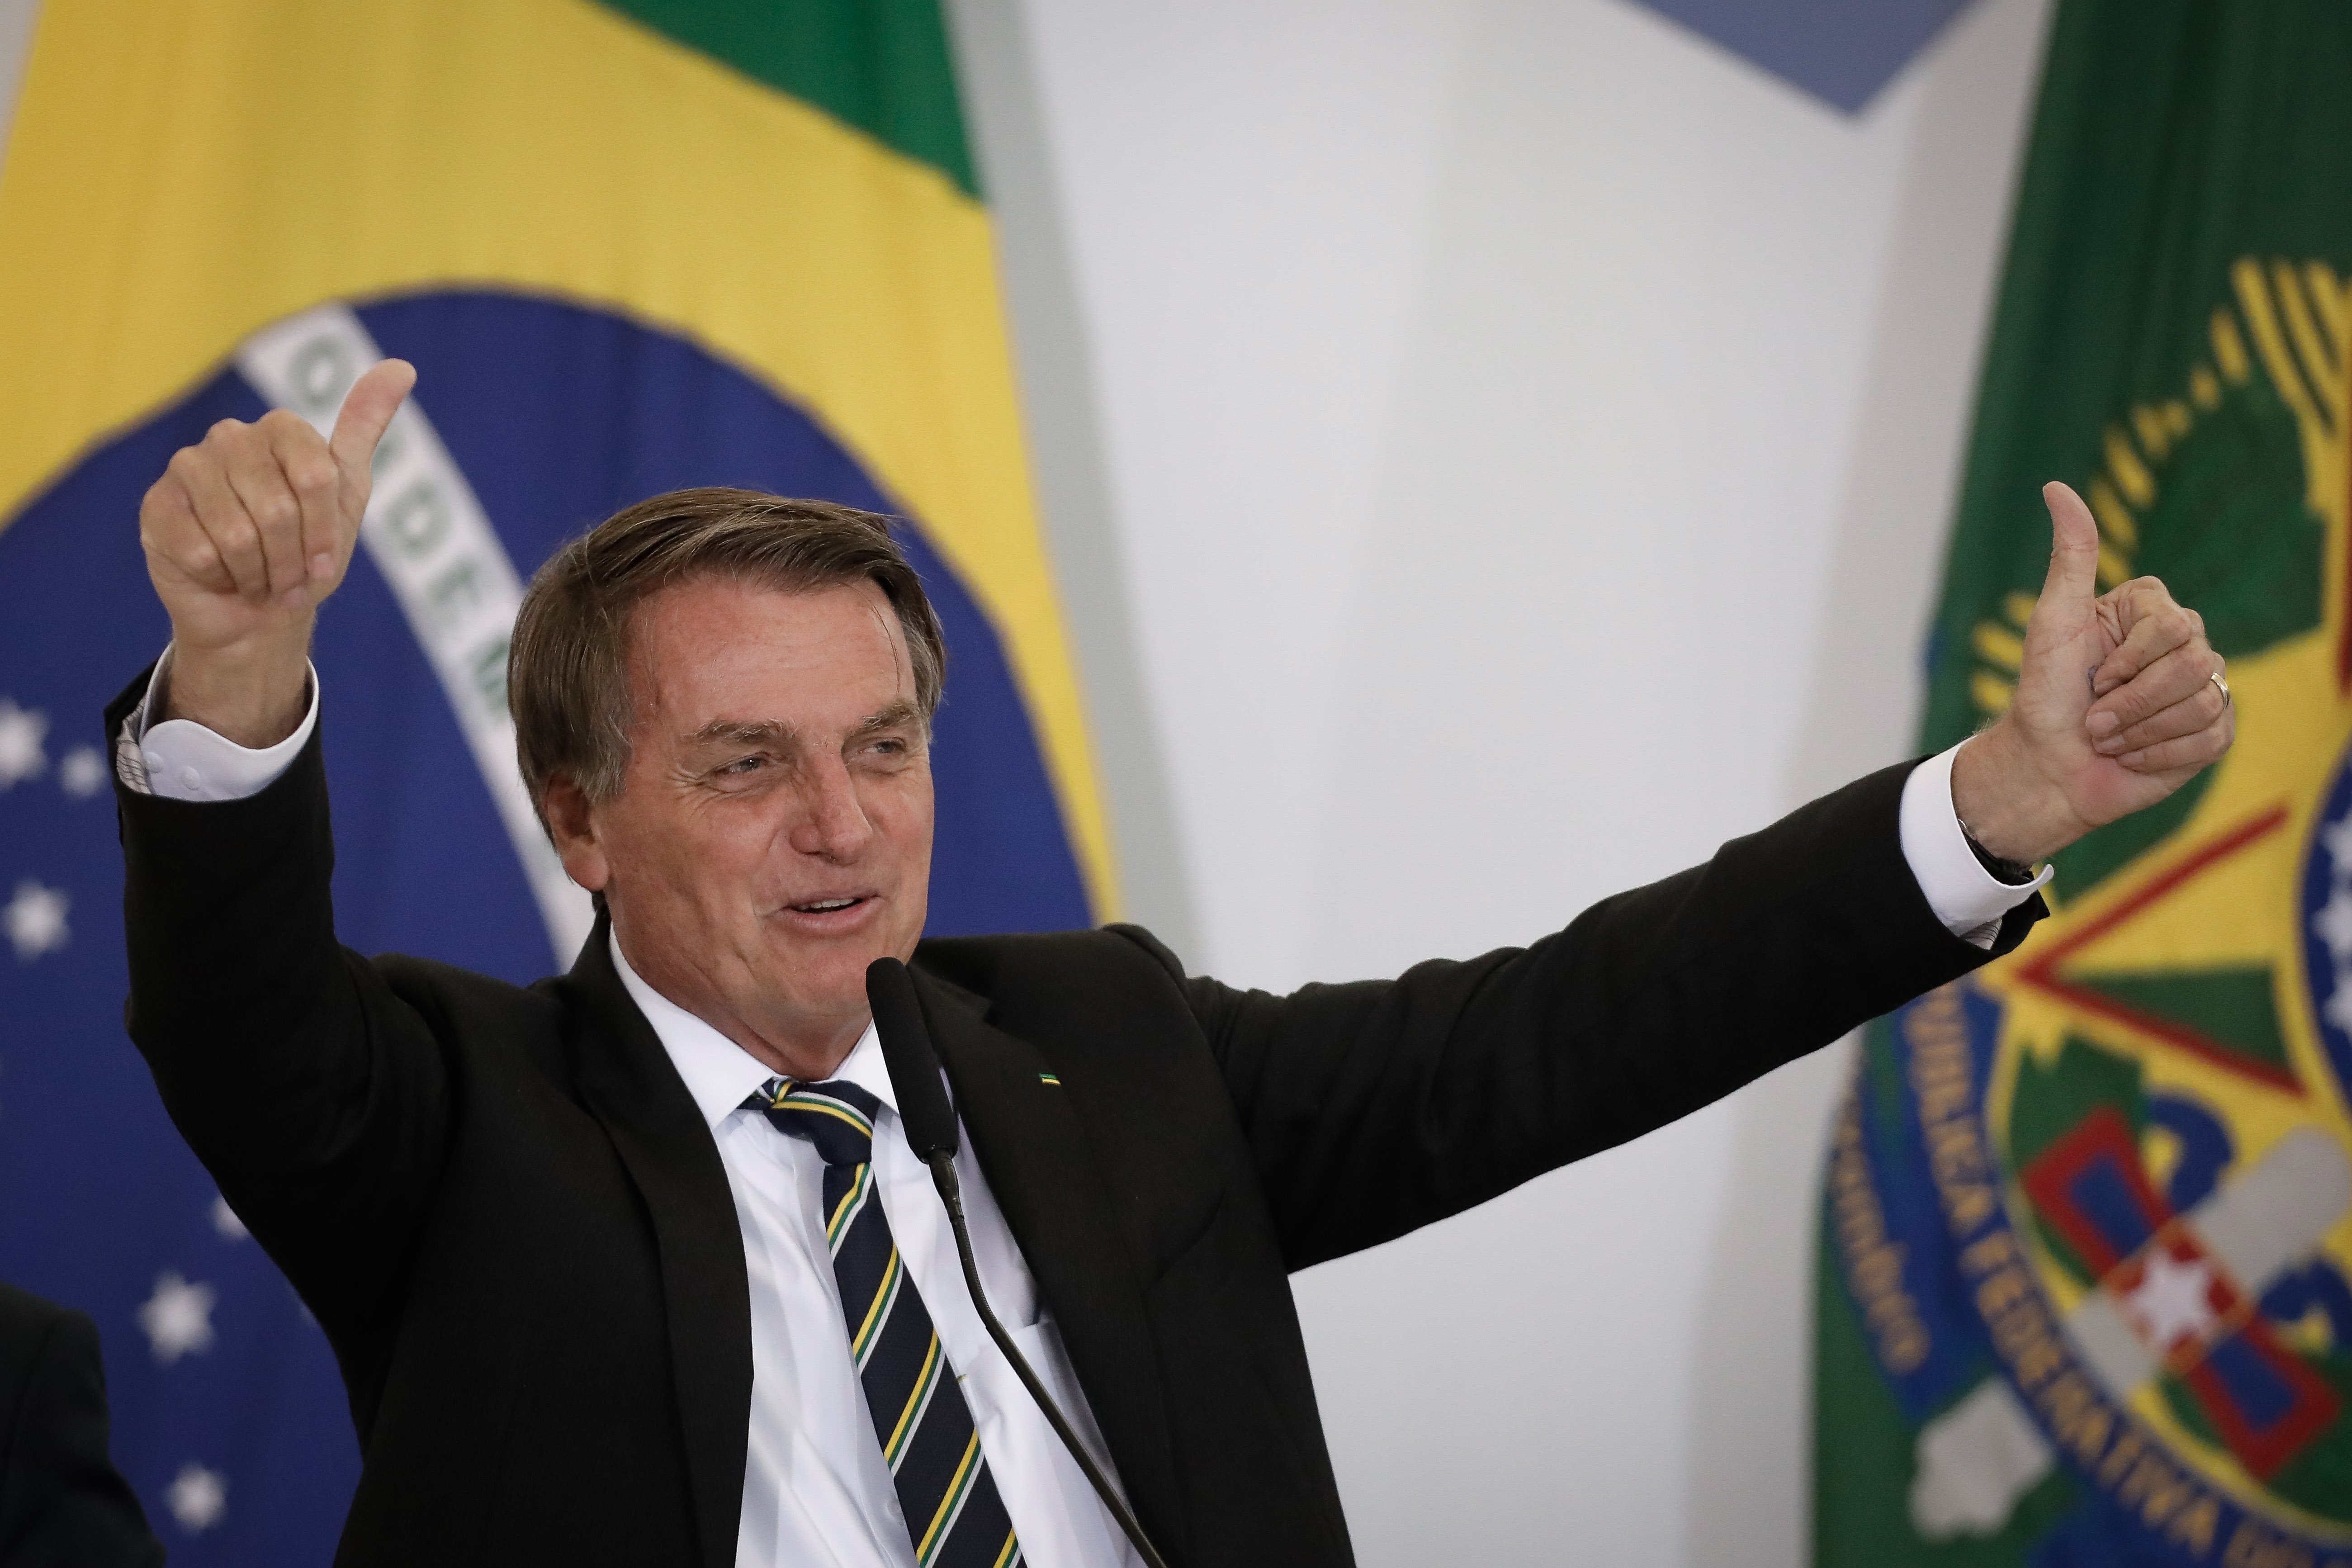 Bolsonaro vincula les vacunes amb el VIH i les xarxes socials diuen prou